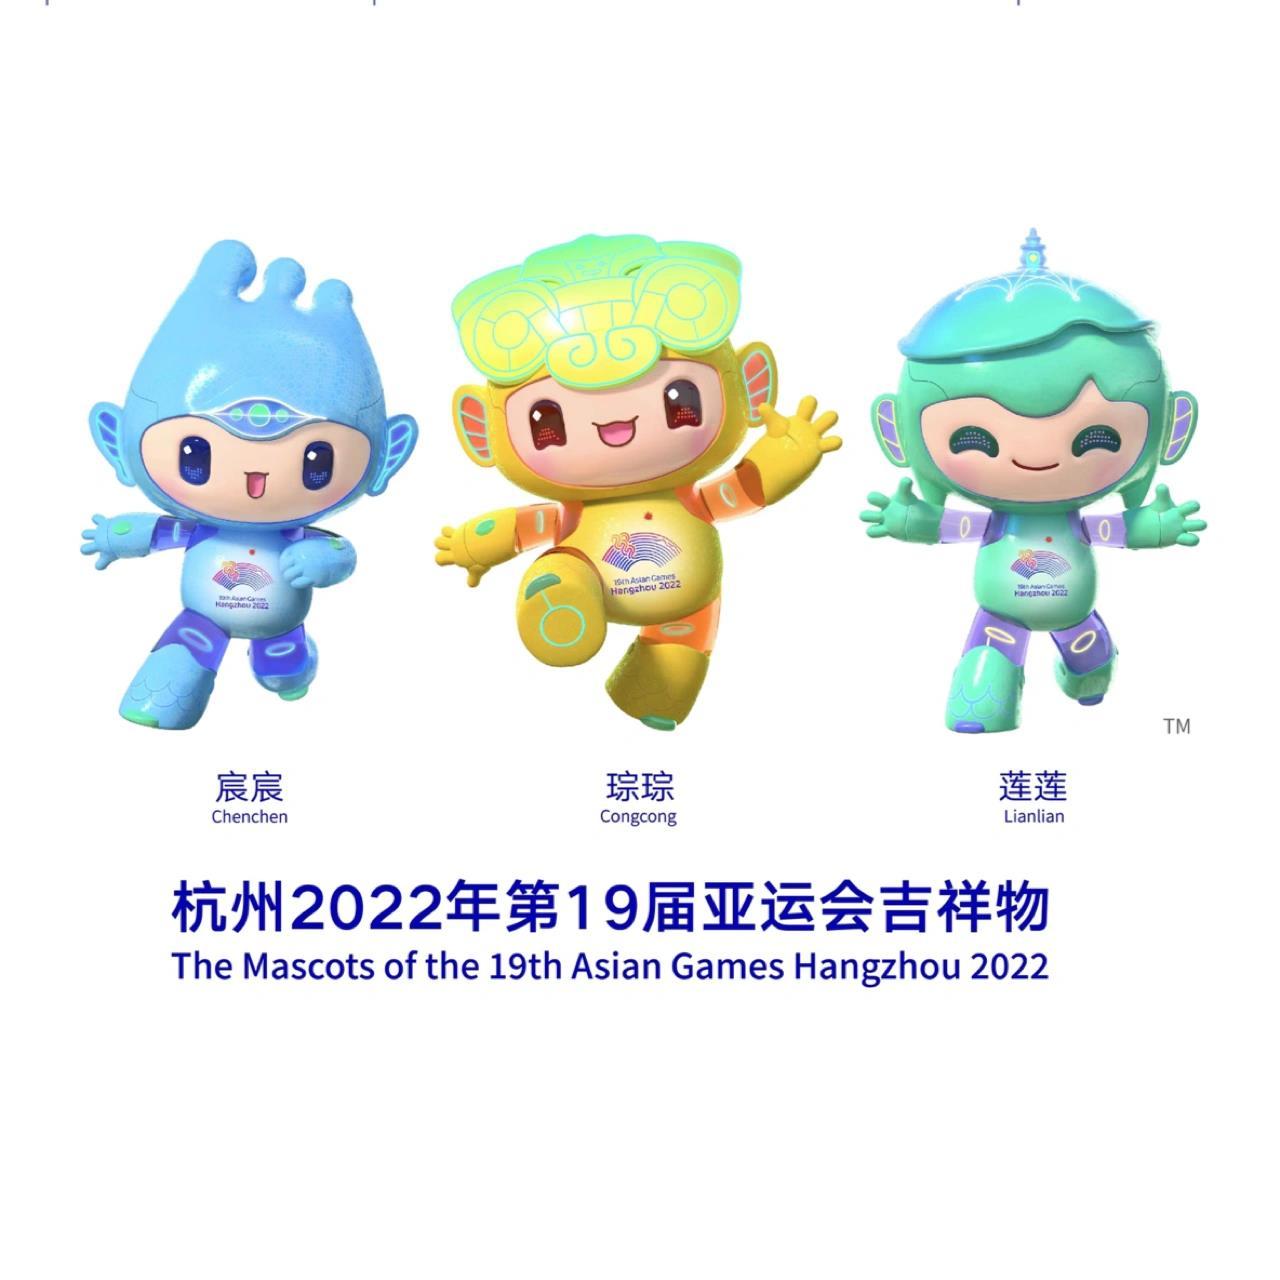 大家好 我们是2022杭州亚运三小只 杭州亚运会吉祥物是一组承载深厚